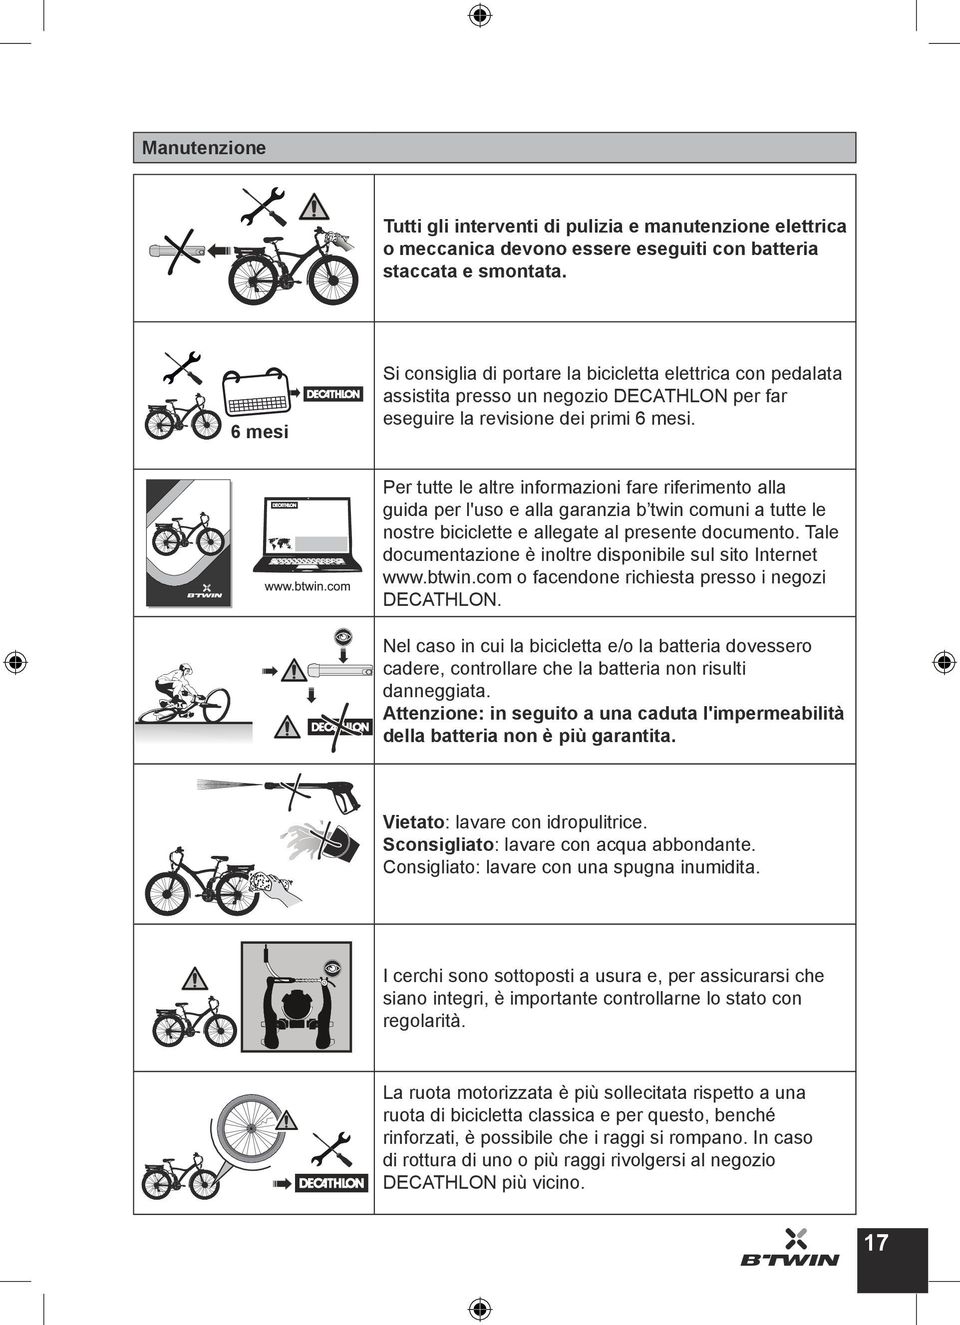 Per tutte le altre informazioni fare riferimento alla guida per l'uso e alla garanzia b twin comuni a tutte le nostre biciclette e allegate al presente documento.